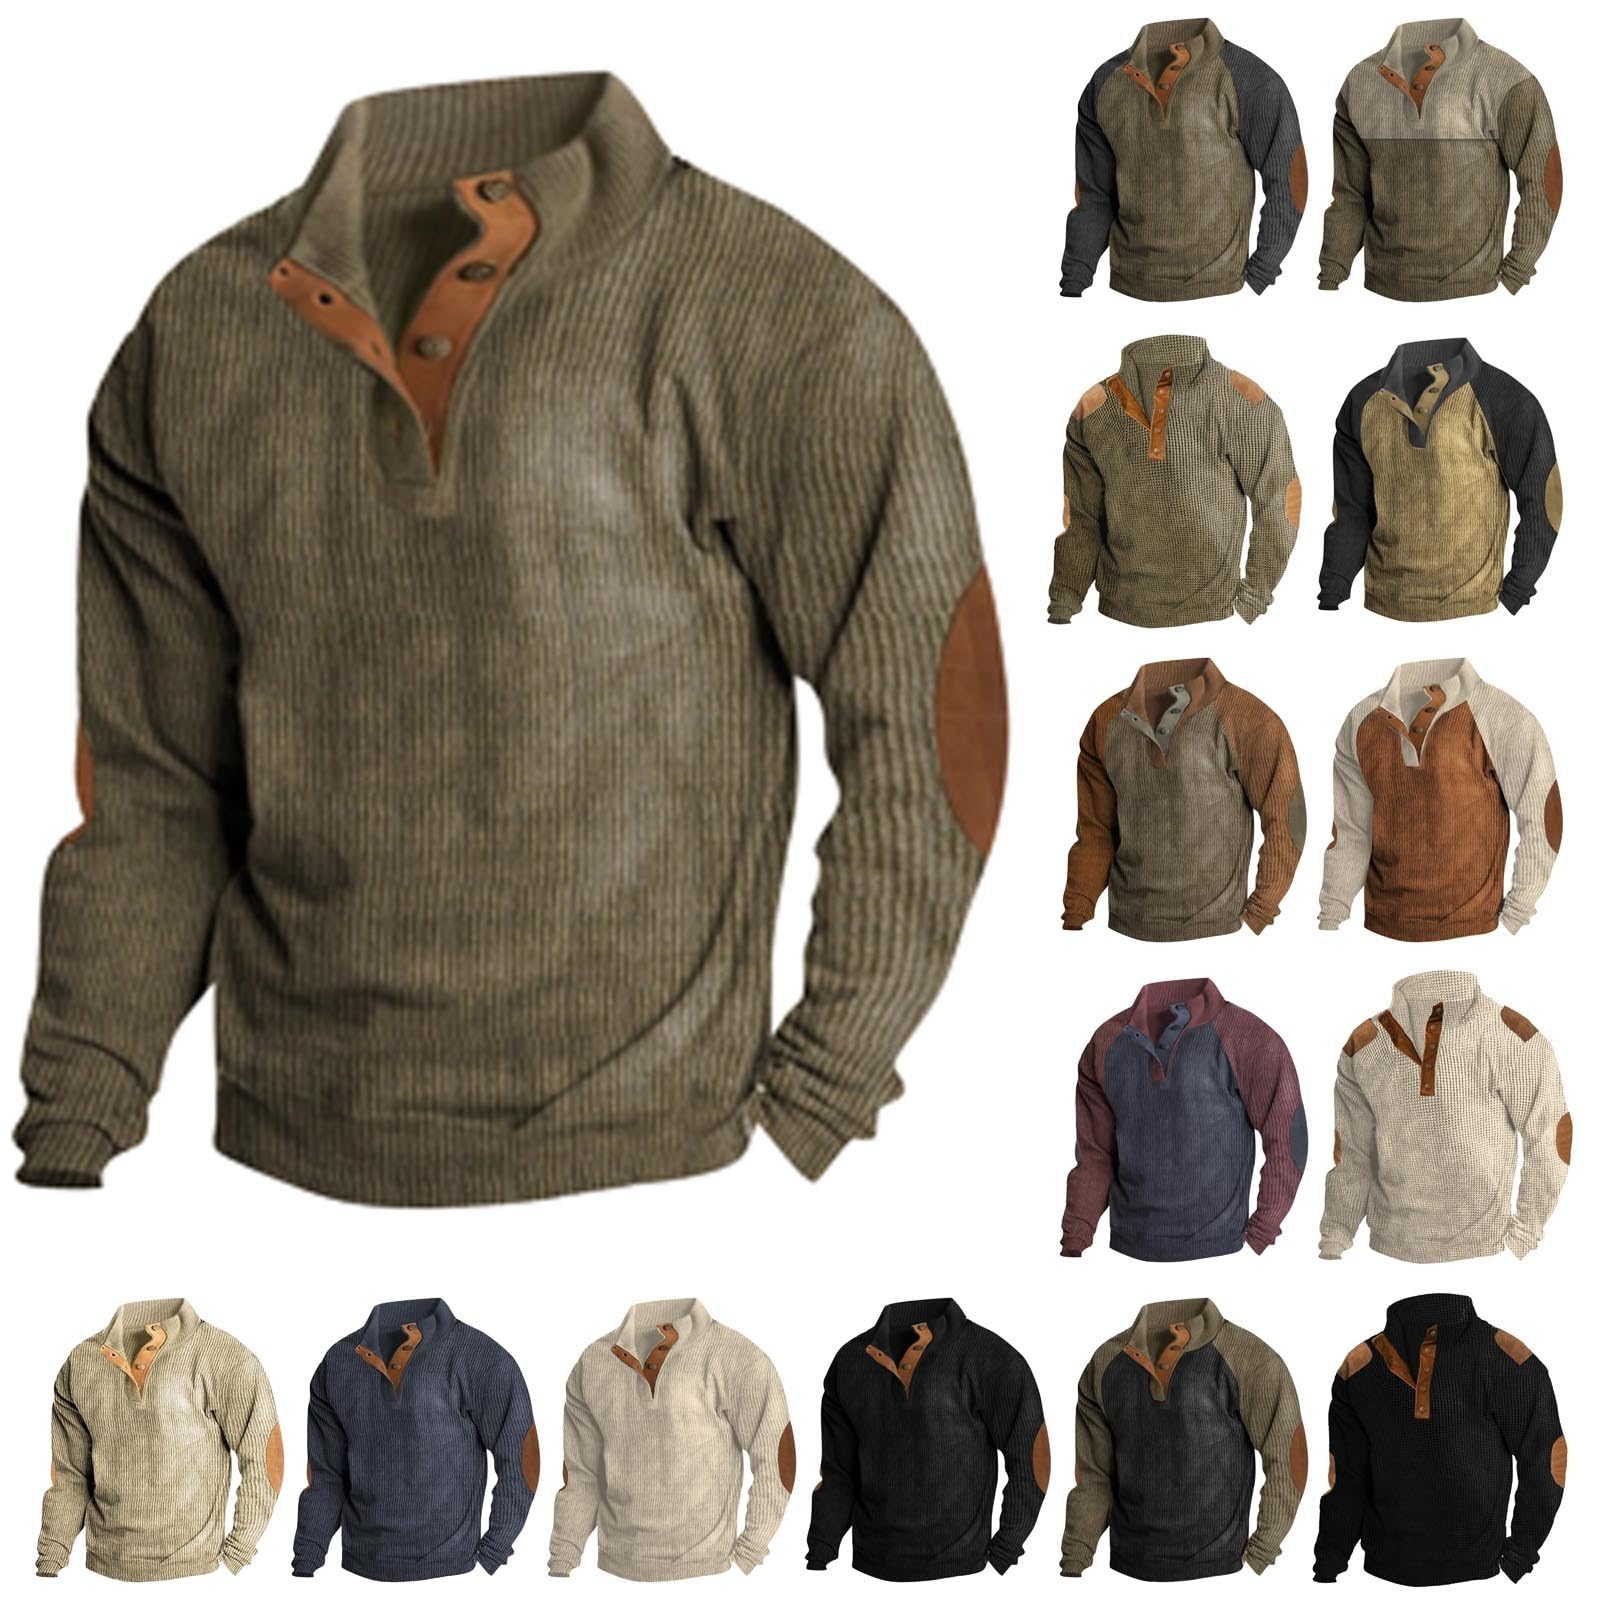  Men's Corduroy Hoodie Sweatshirts Long Sleeve Drawstring Hoodie  Pullover Sweatshirt Casual Pullover Tops(Beige,S) : Sports & Outdoors